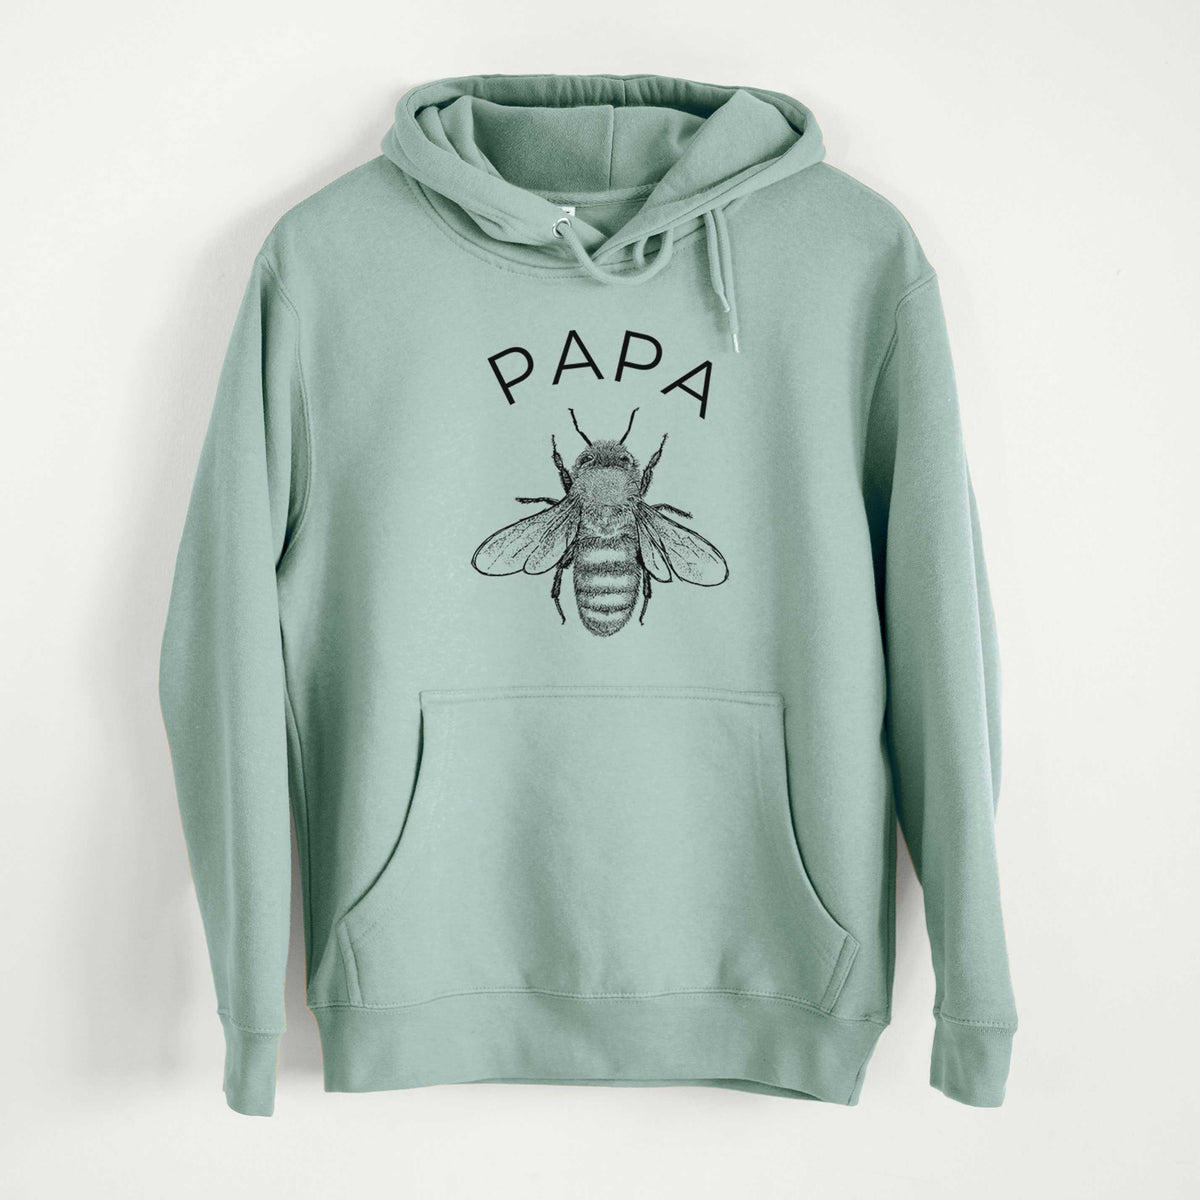 Papa Bee  - Mid-Weight Unisex Premium Blend Hoodie